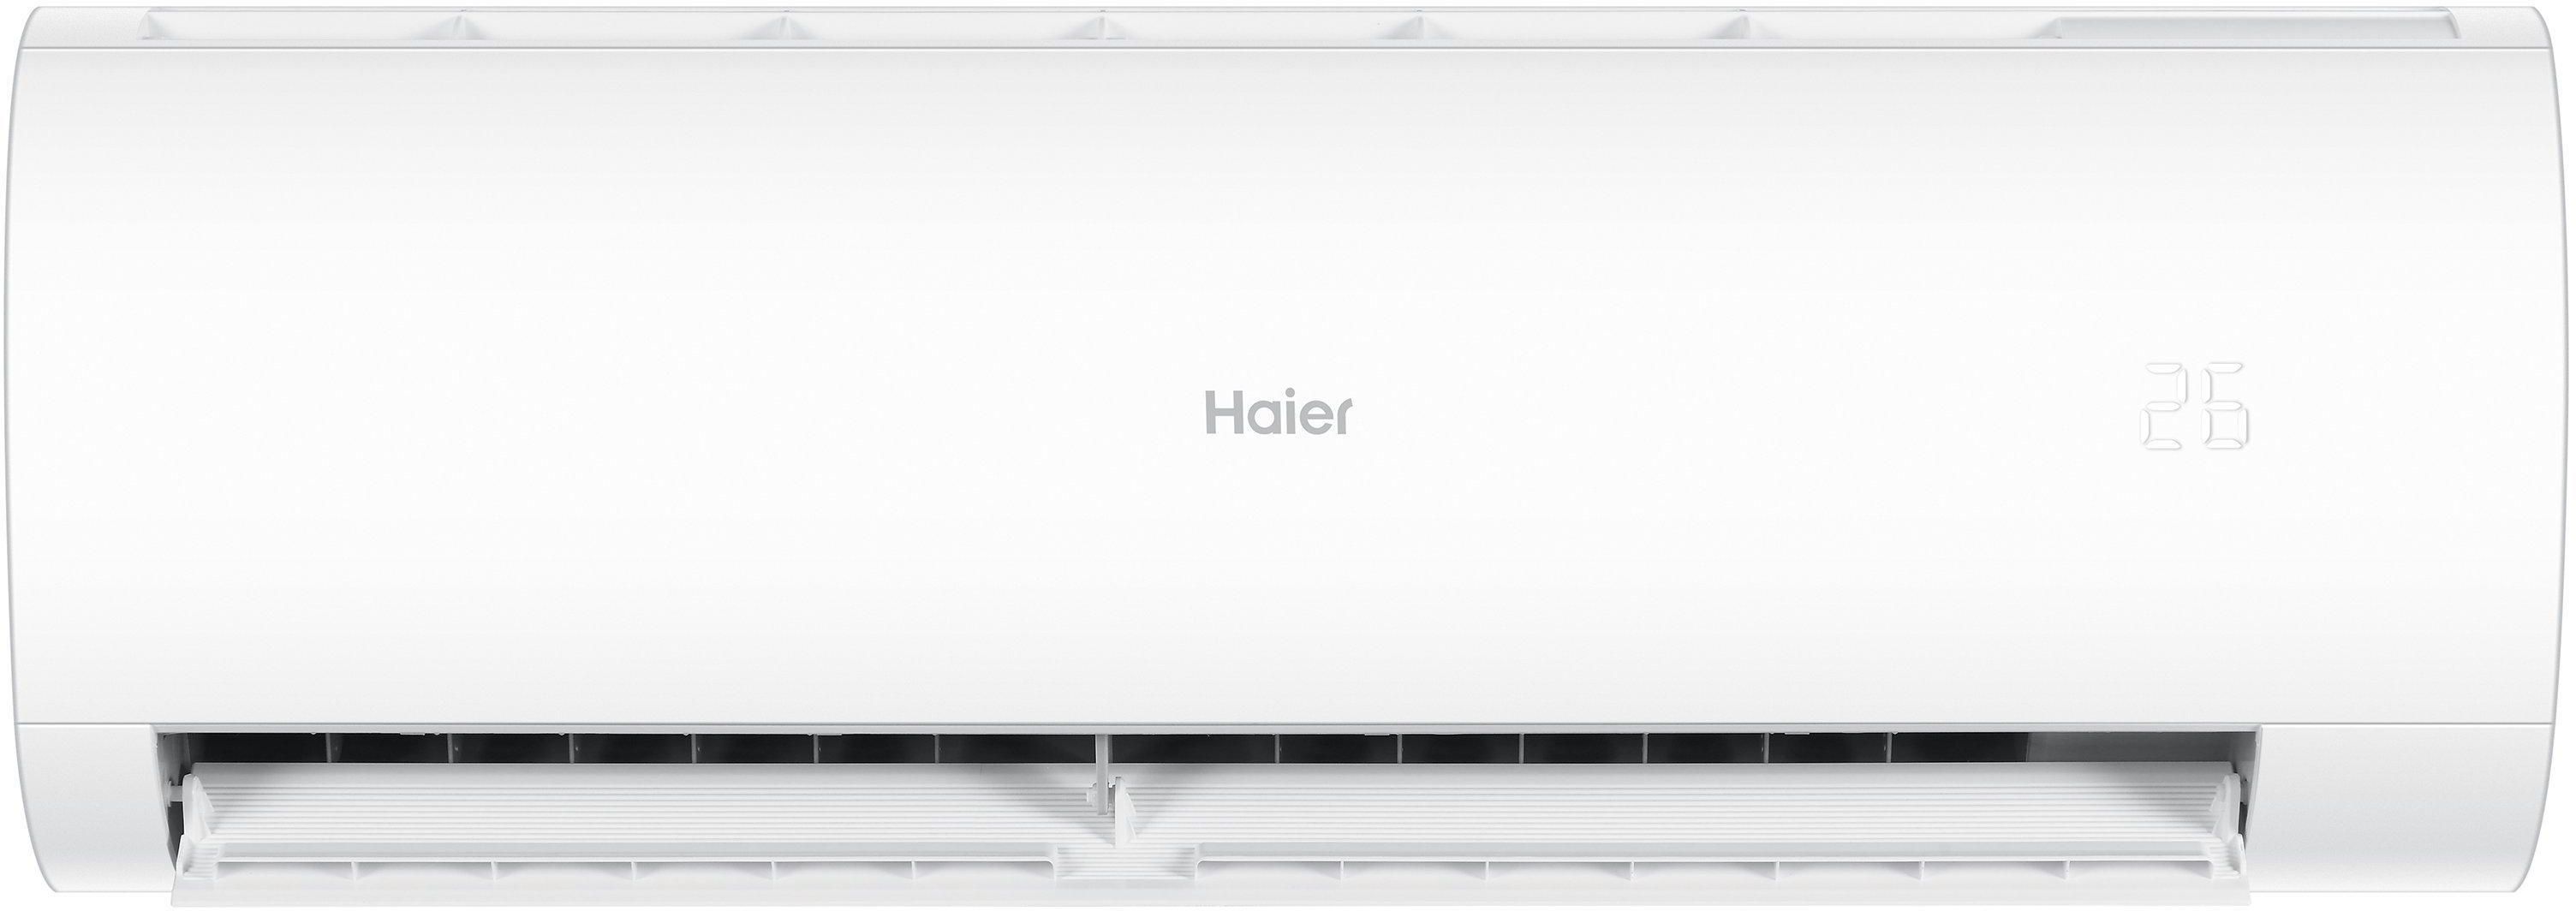 Haier smart Split AC, 12,400 BTU, WIFI, Cool & Heat